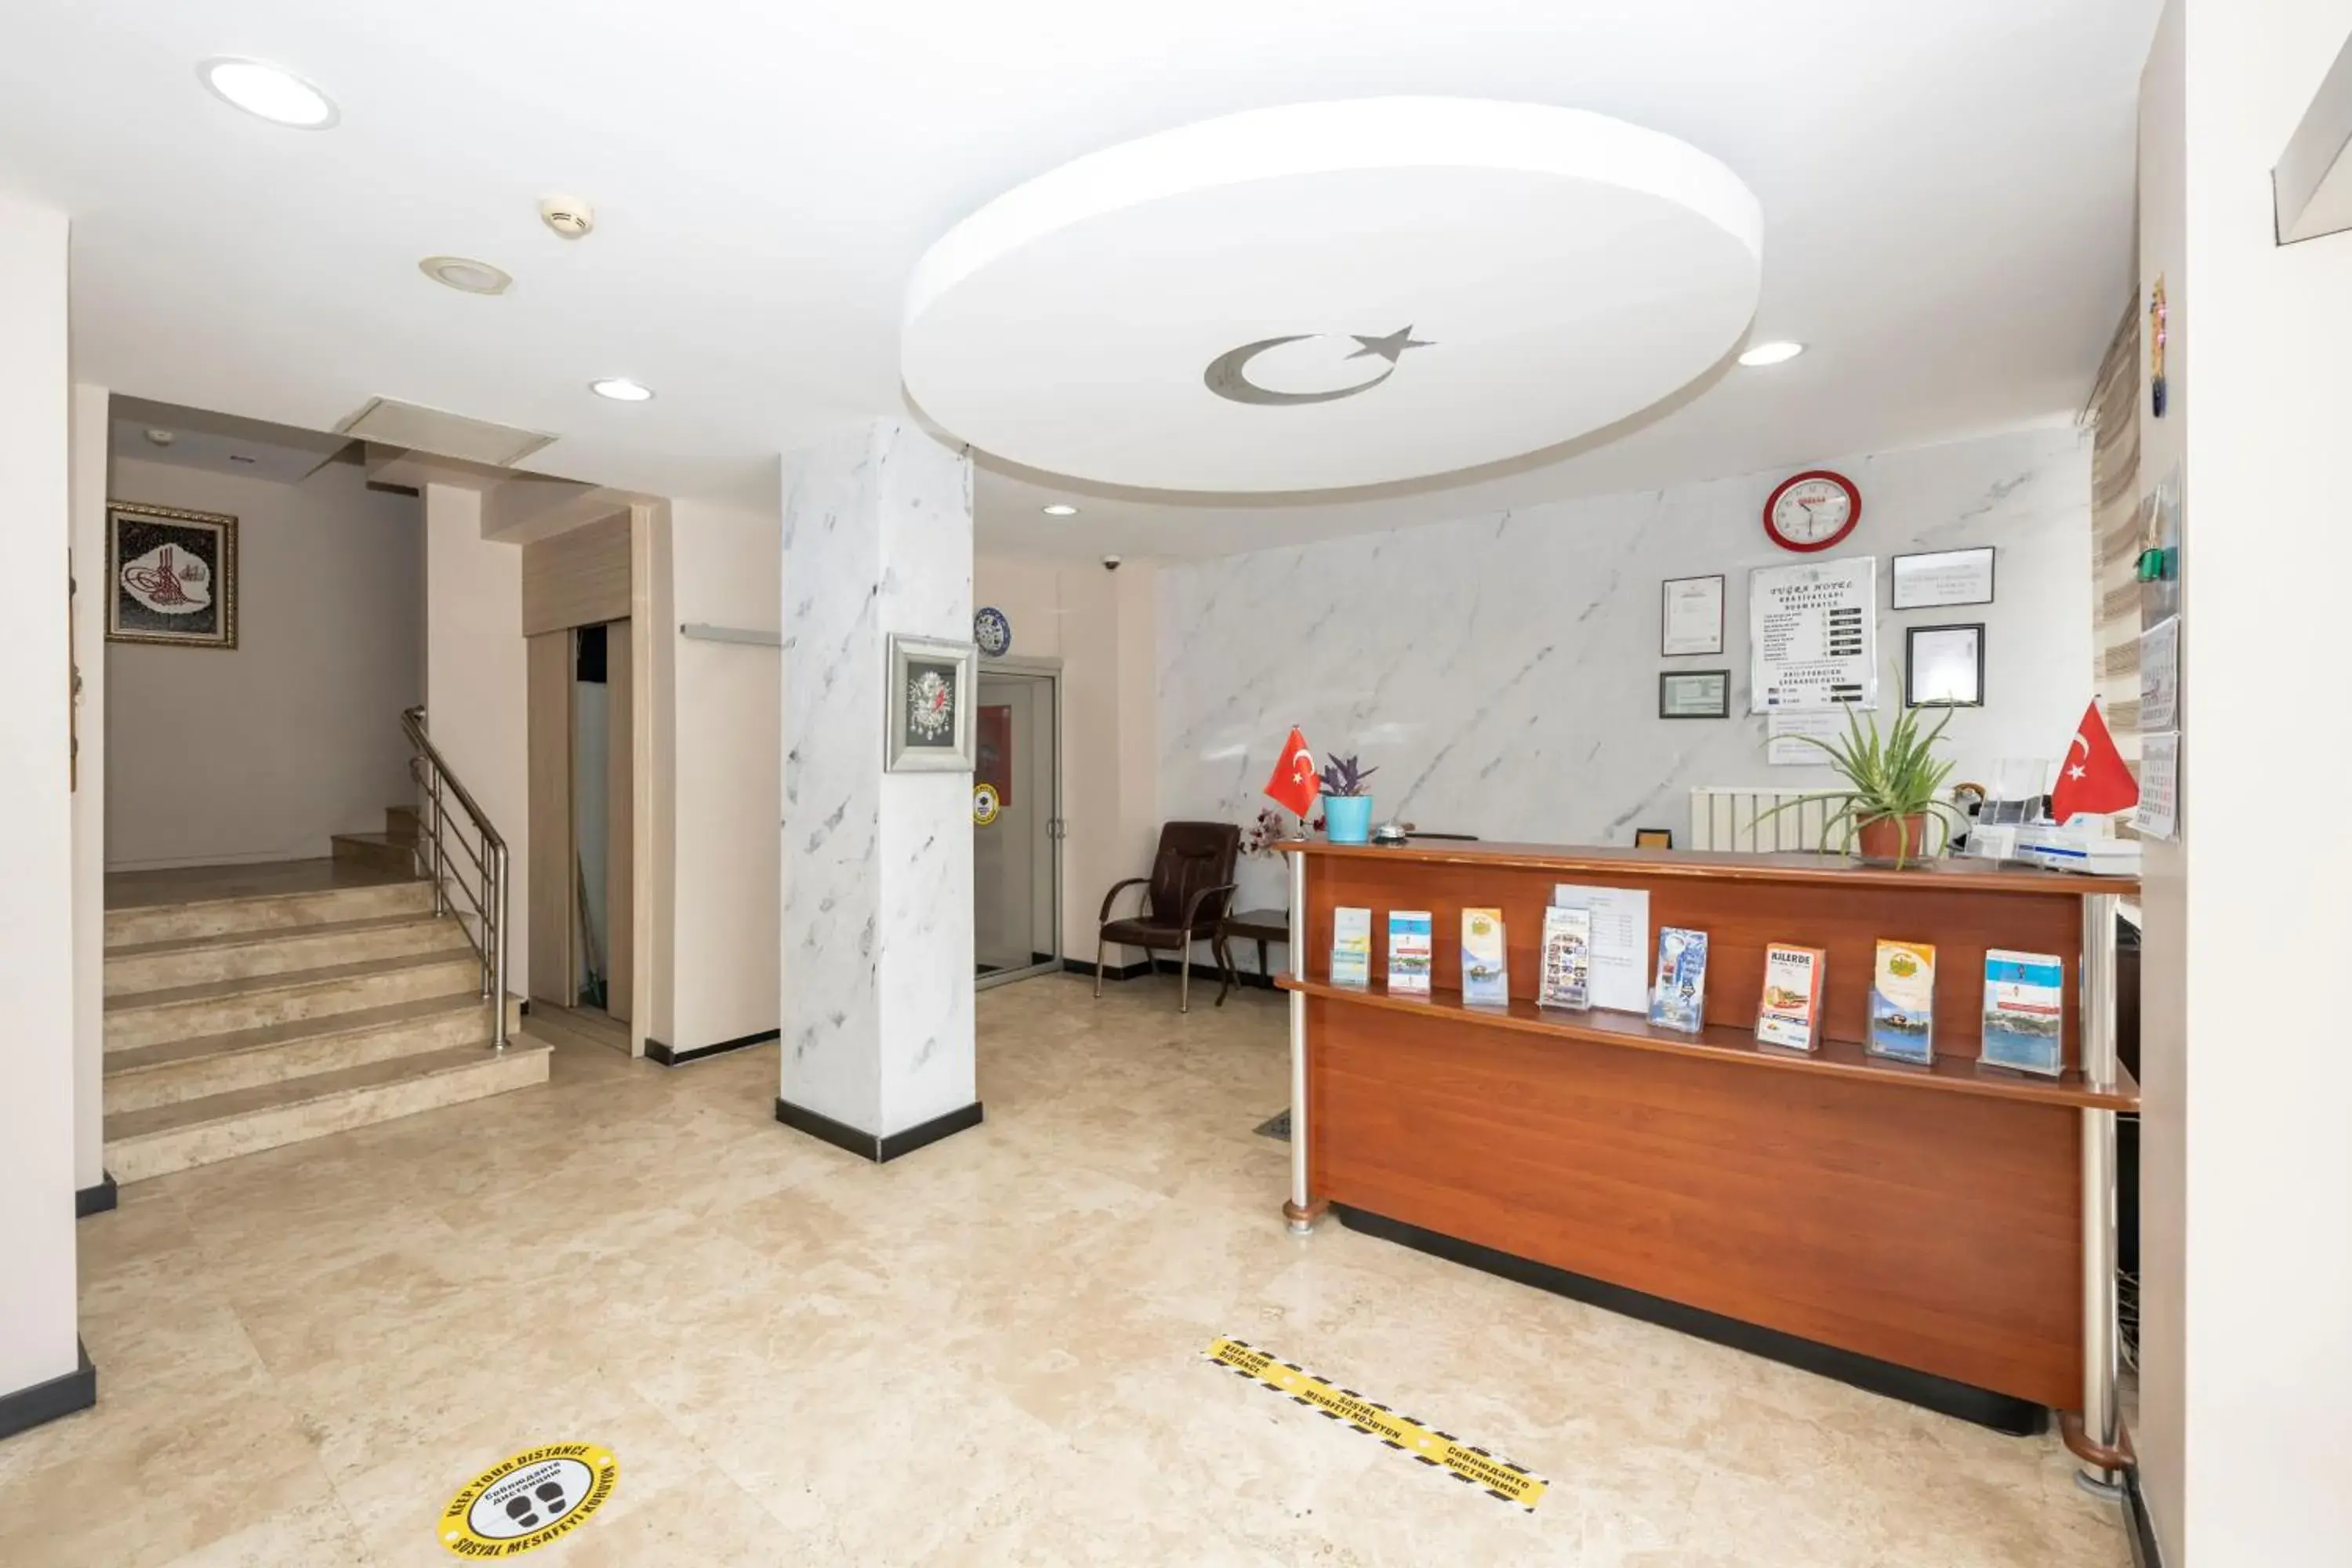 Lobby or reception, Lobby/Reception in Tugra Hotel